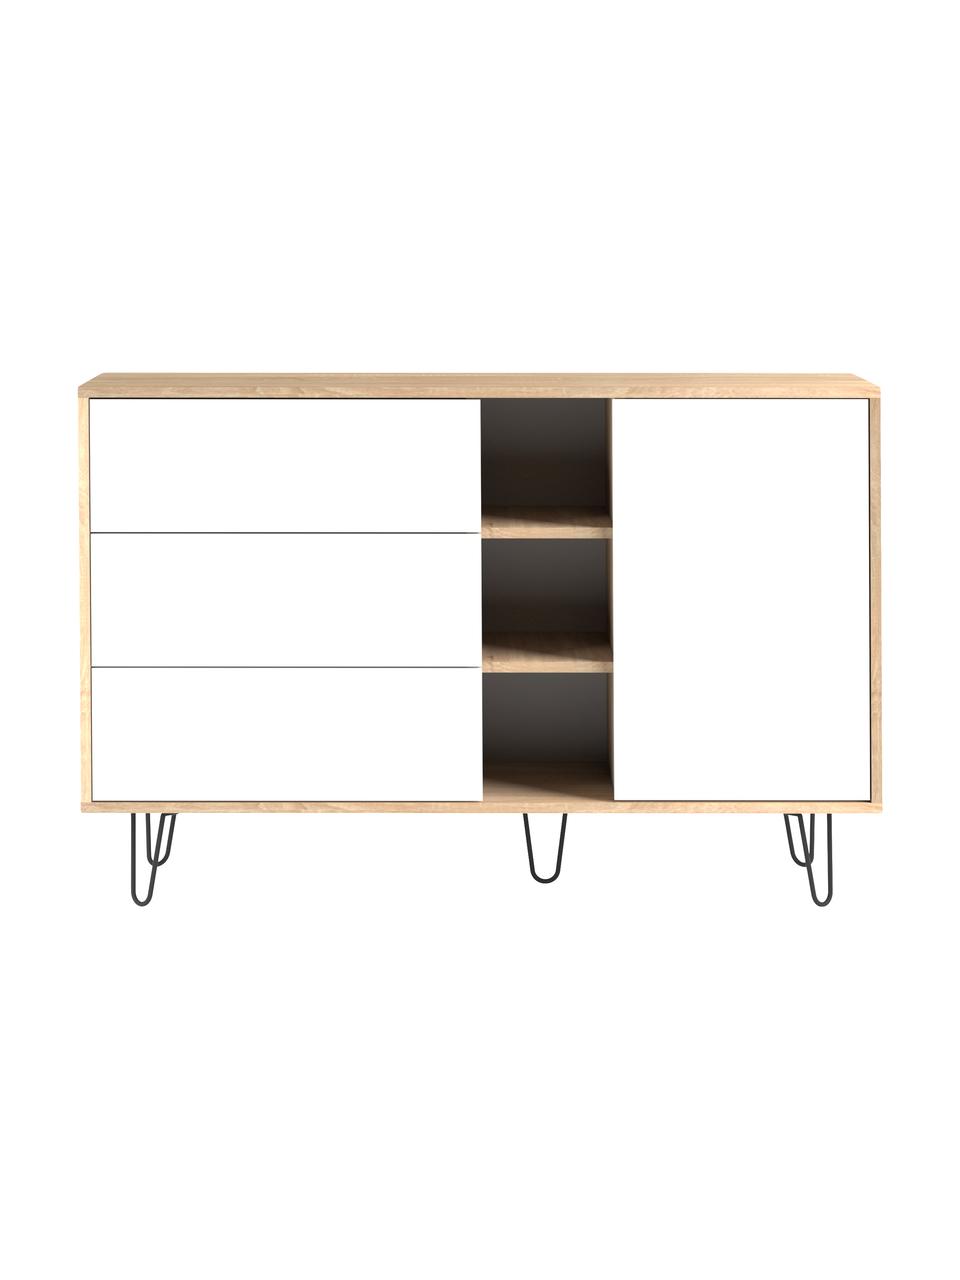 Design-Sideboard Aero mit Schubladen, Korpus: Spanplatte, melaminbeschi, Füße: Metall, lackiert, Eichenholz, Weiß, 120 x 80 cm